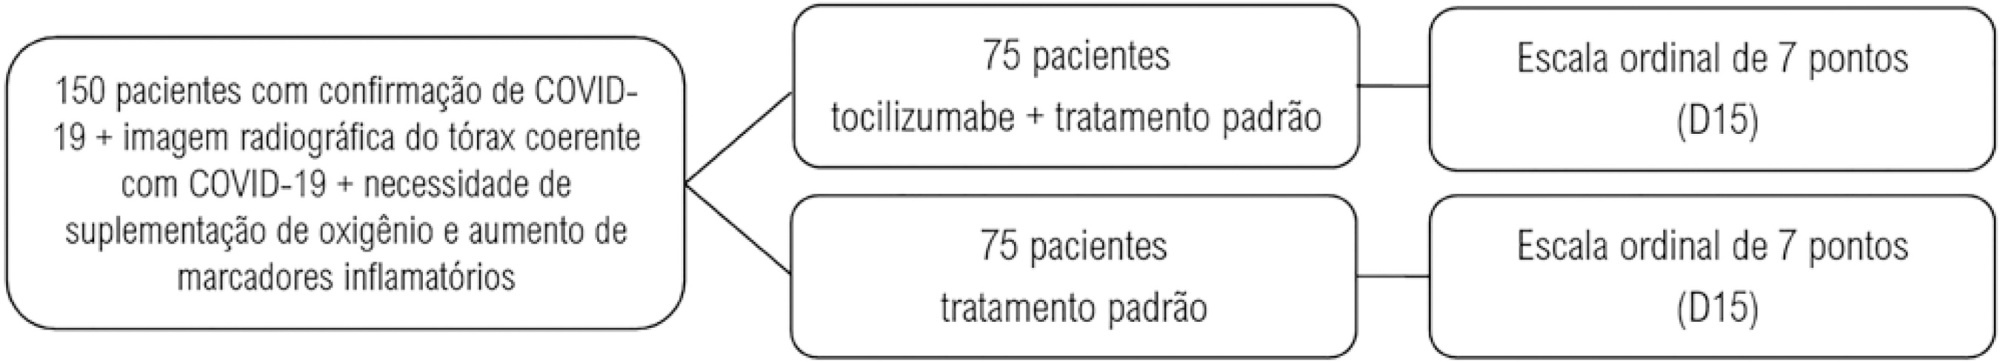 Justificativa e delineamento do estudo “Tocilizumabe em pacientes com COVID-19 moderado a grave: estudo aberto, multicêntrico, randomizado, controlado” (TOCIBRAS)